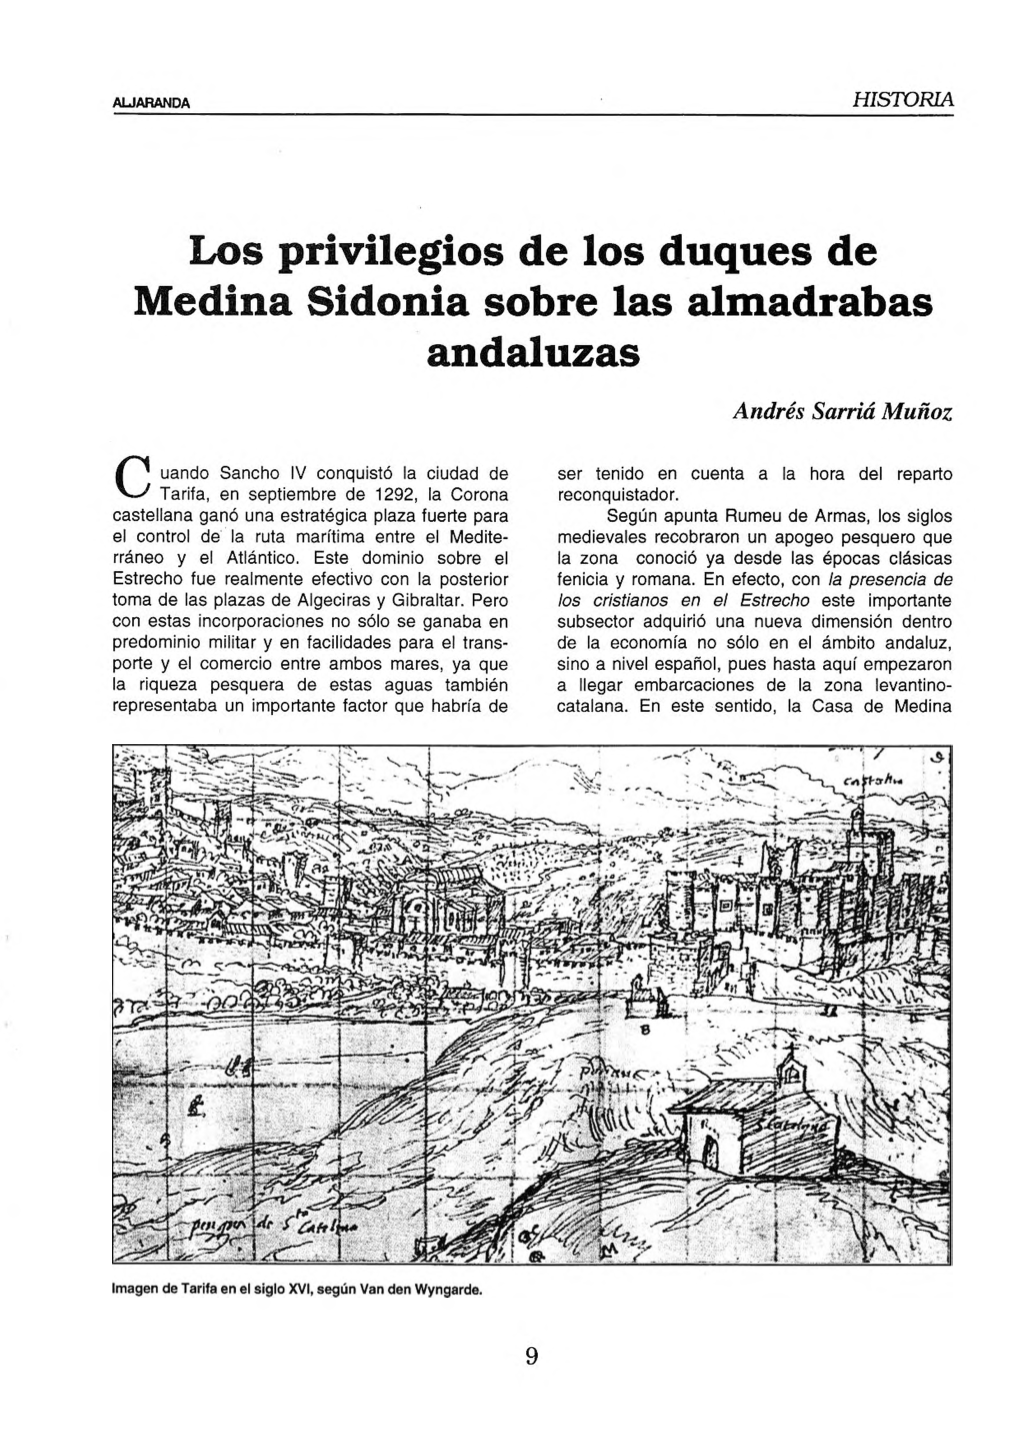 Los Privilegios De Los Duques De Medina Sidonia Sobre Las Almadrabas Andaluzas